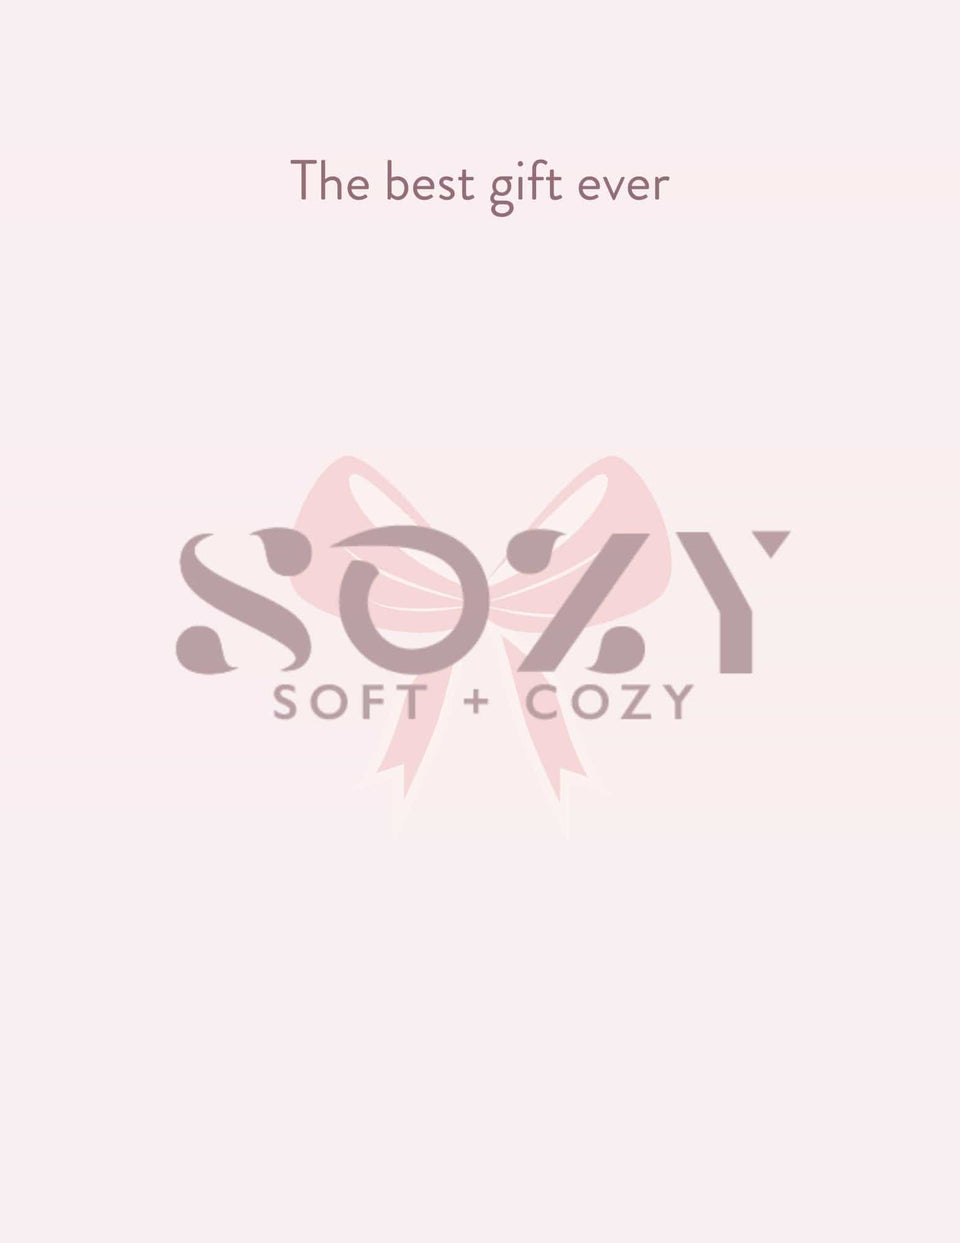 Sozy Digital Gift Card